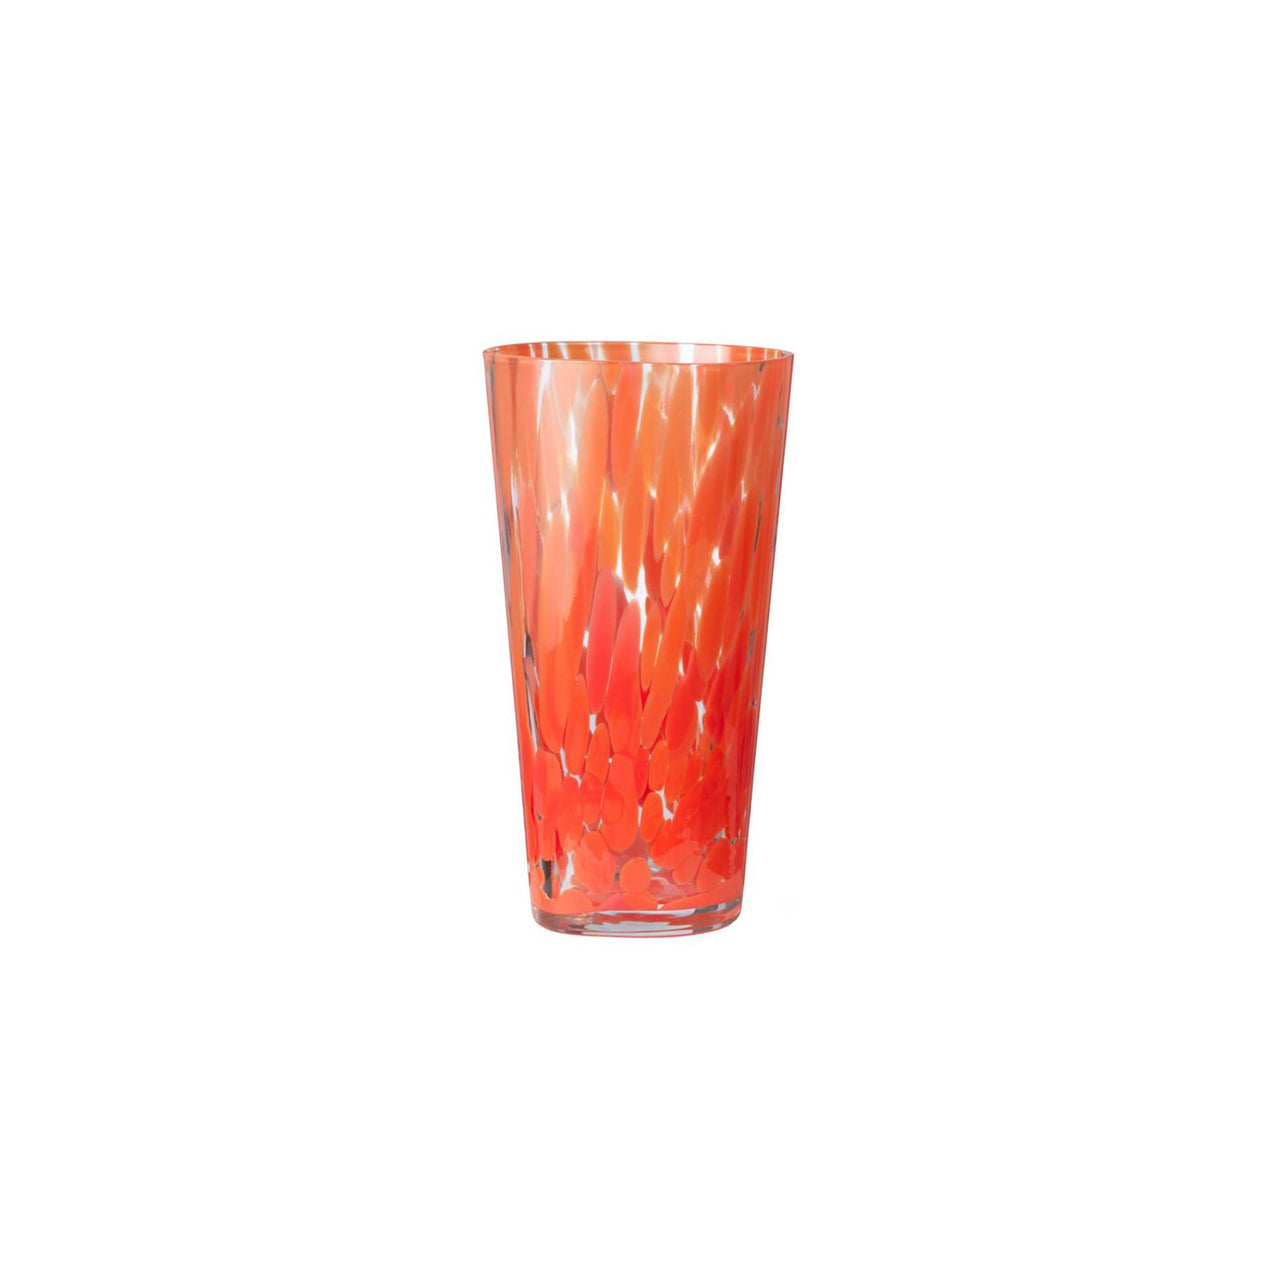 Casca Vase: Poppy Red